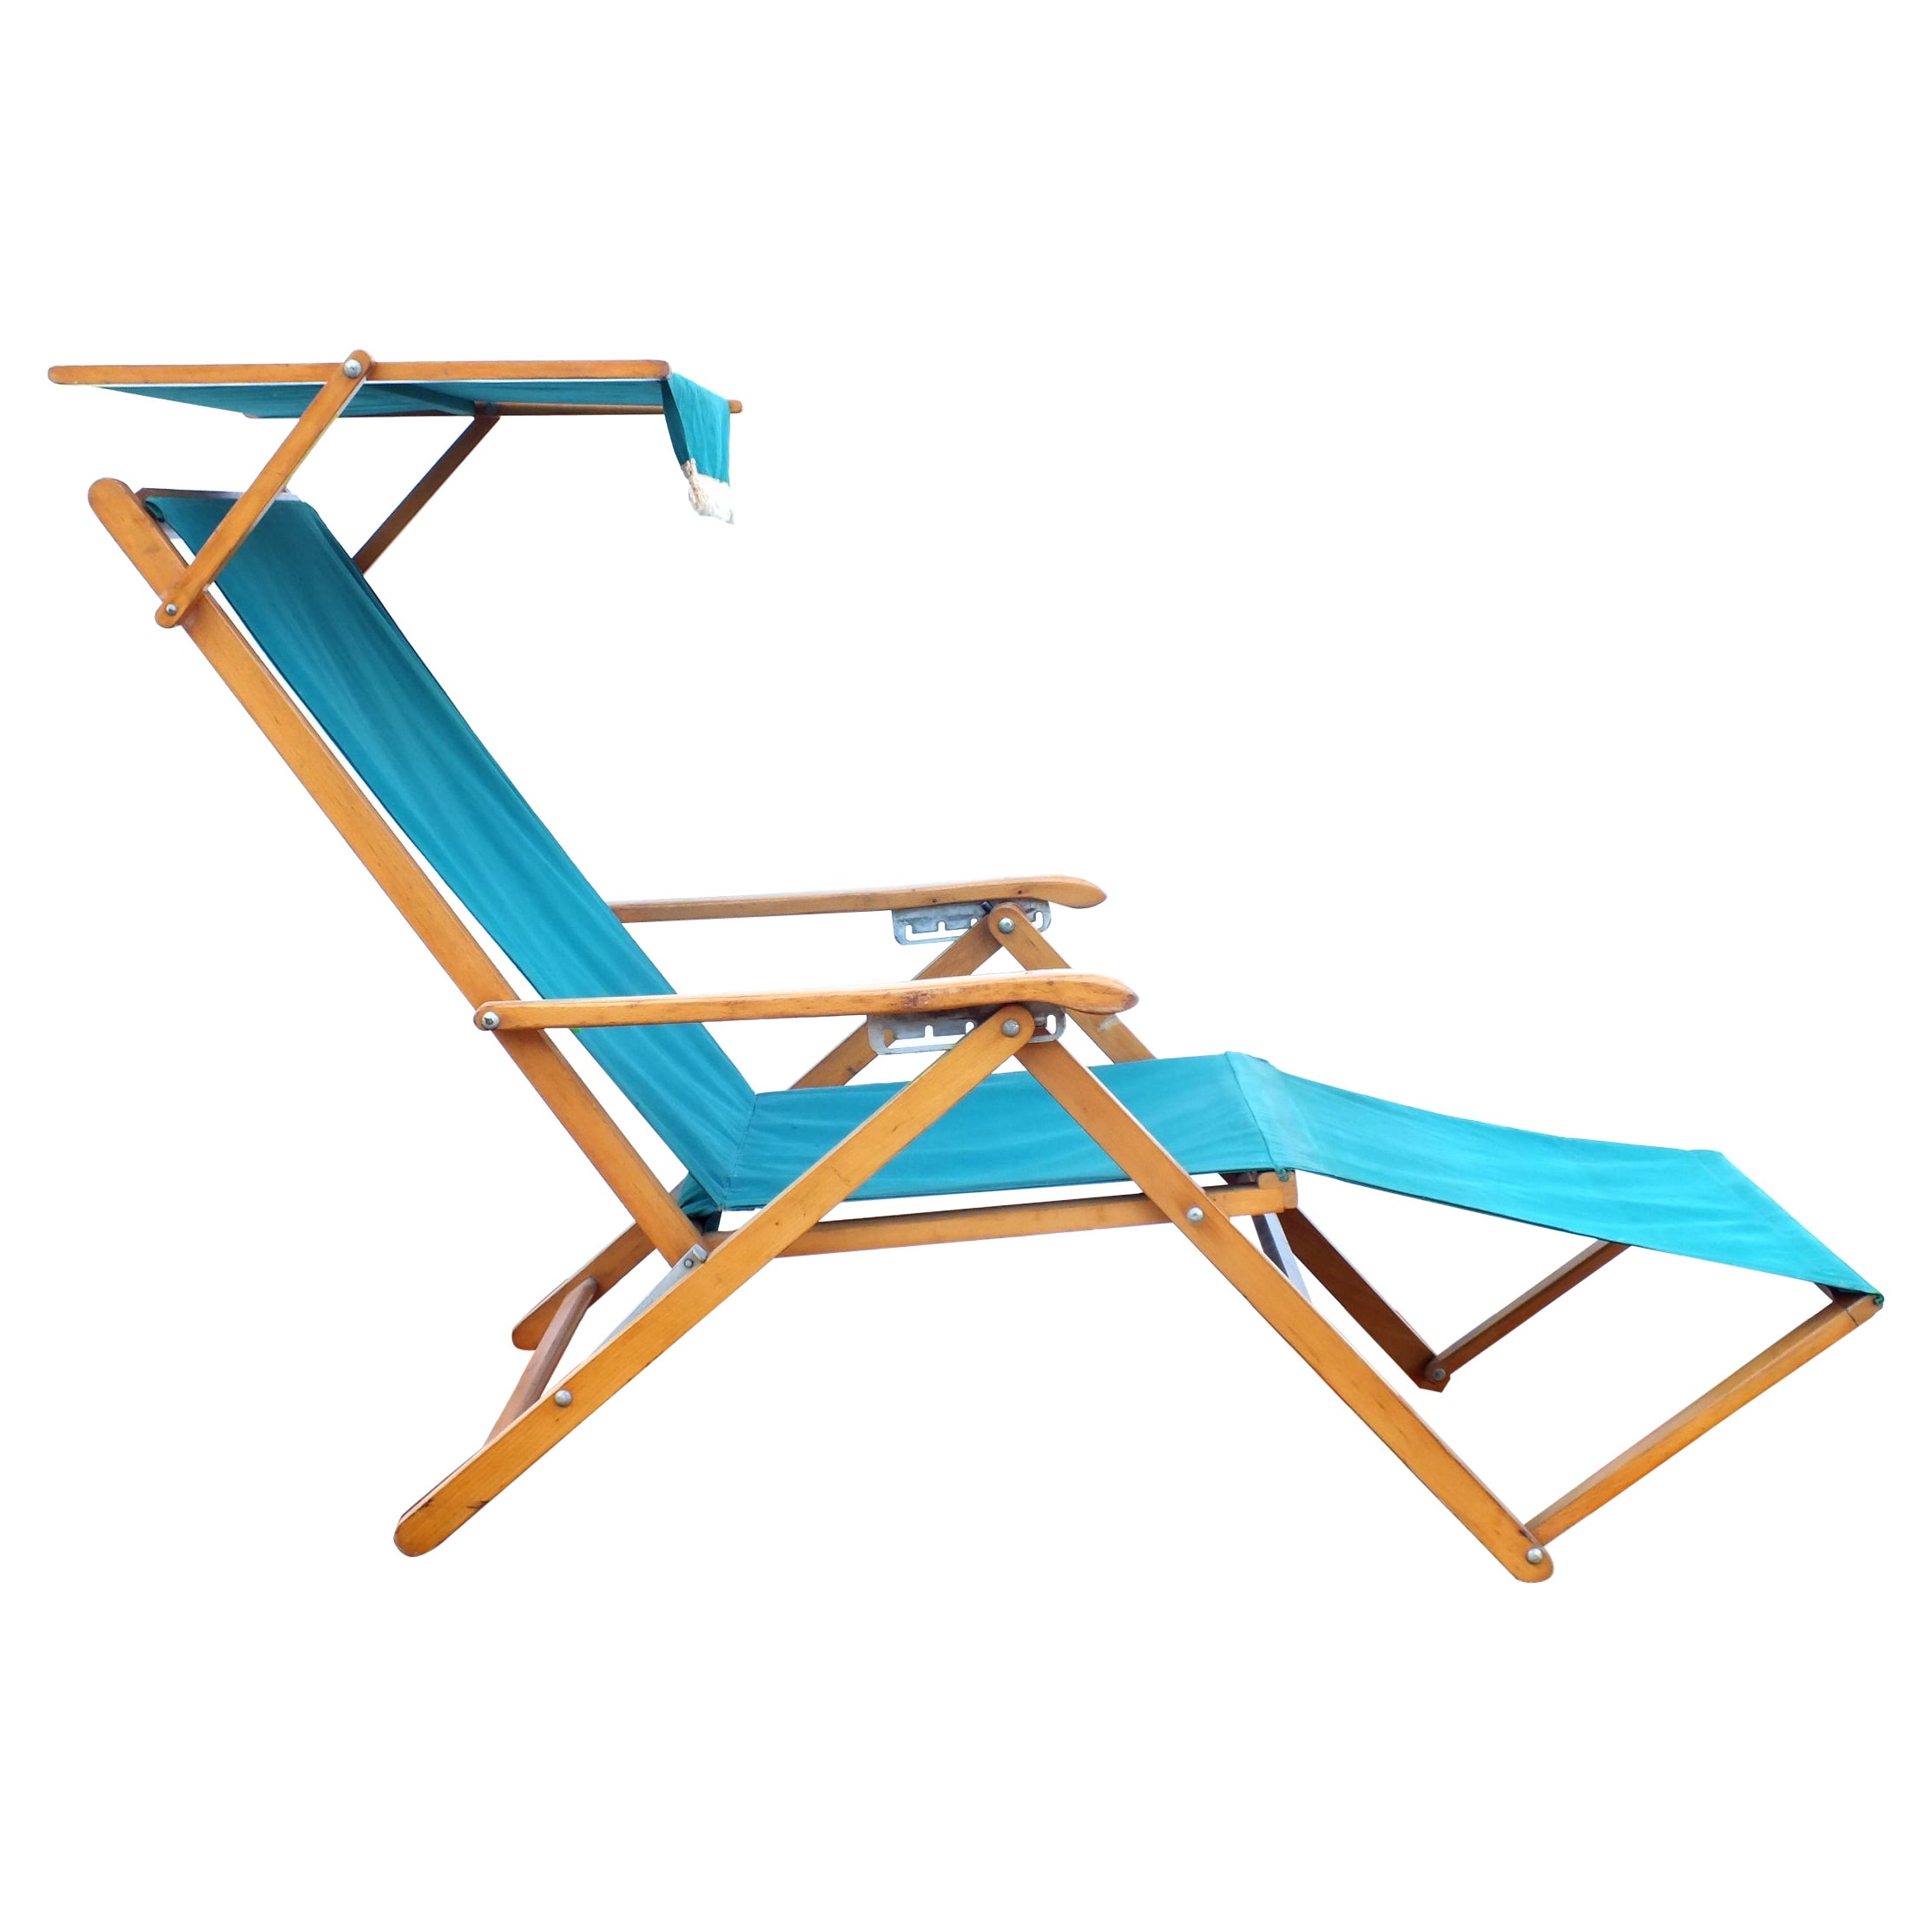 Reguitti Brescia Italy "Capri" Long Chair For Sale